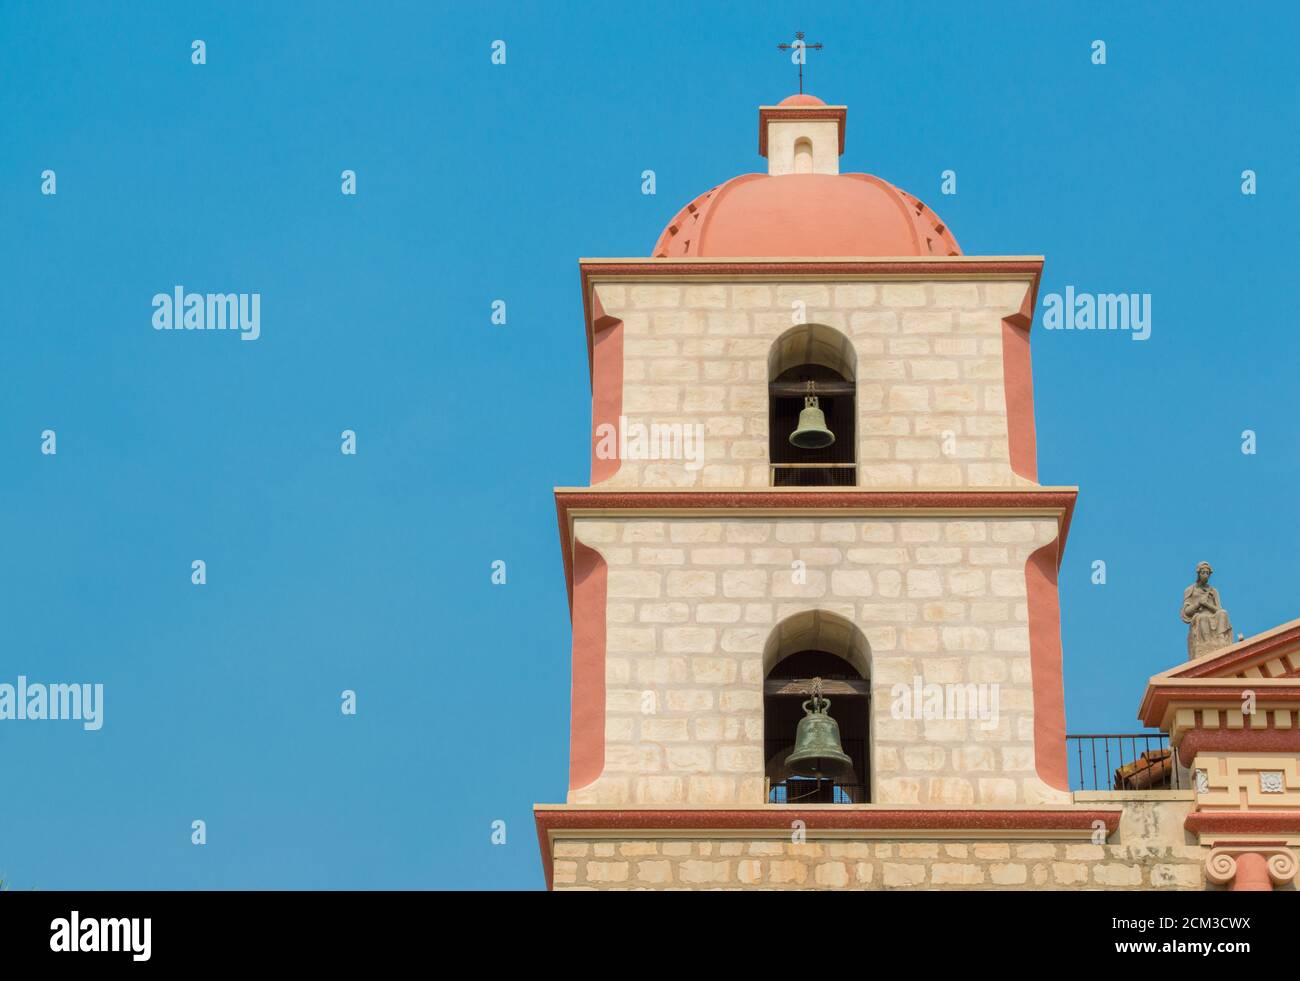 Glockenturm im spanischen Stil an der historischen Santa Barbara Mission In Kalifornien unter hellblauem Himmel mit Kopierraum Stockfoto